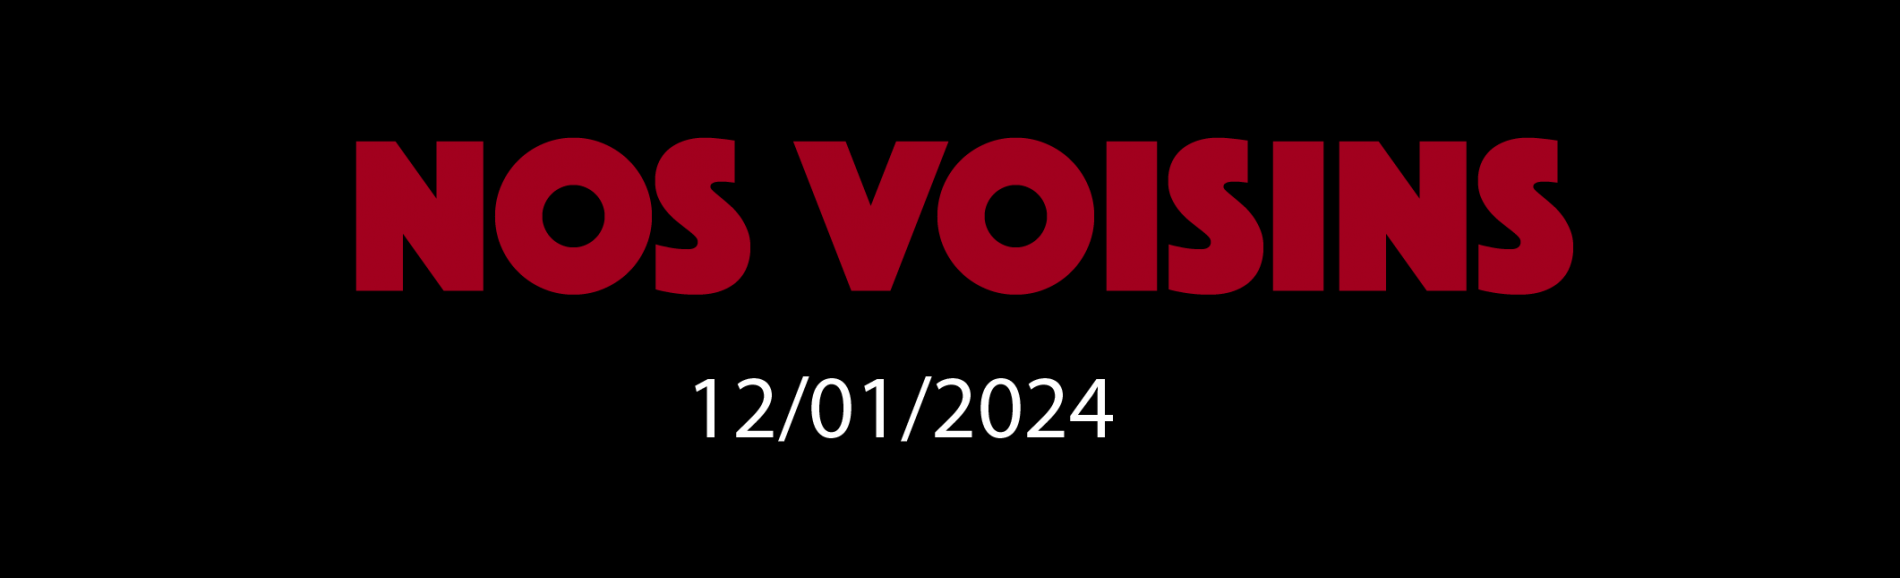 NOS VOISINS - 12/01/2024